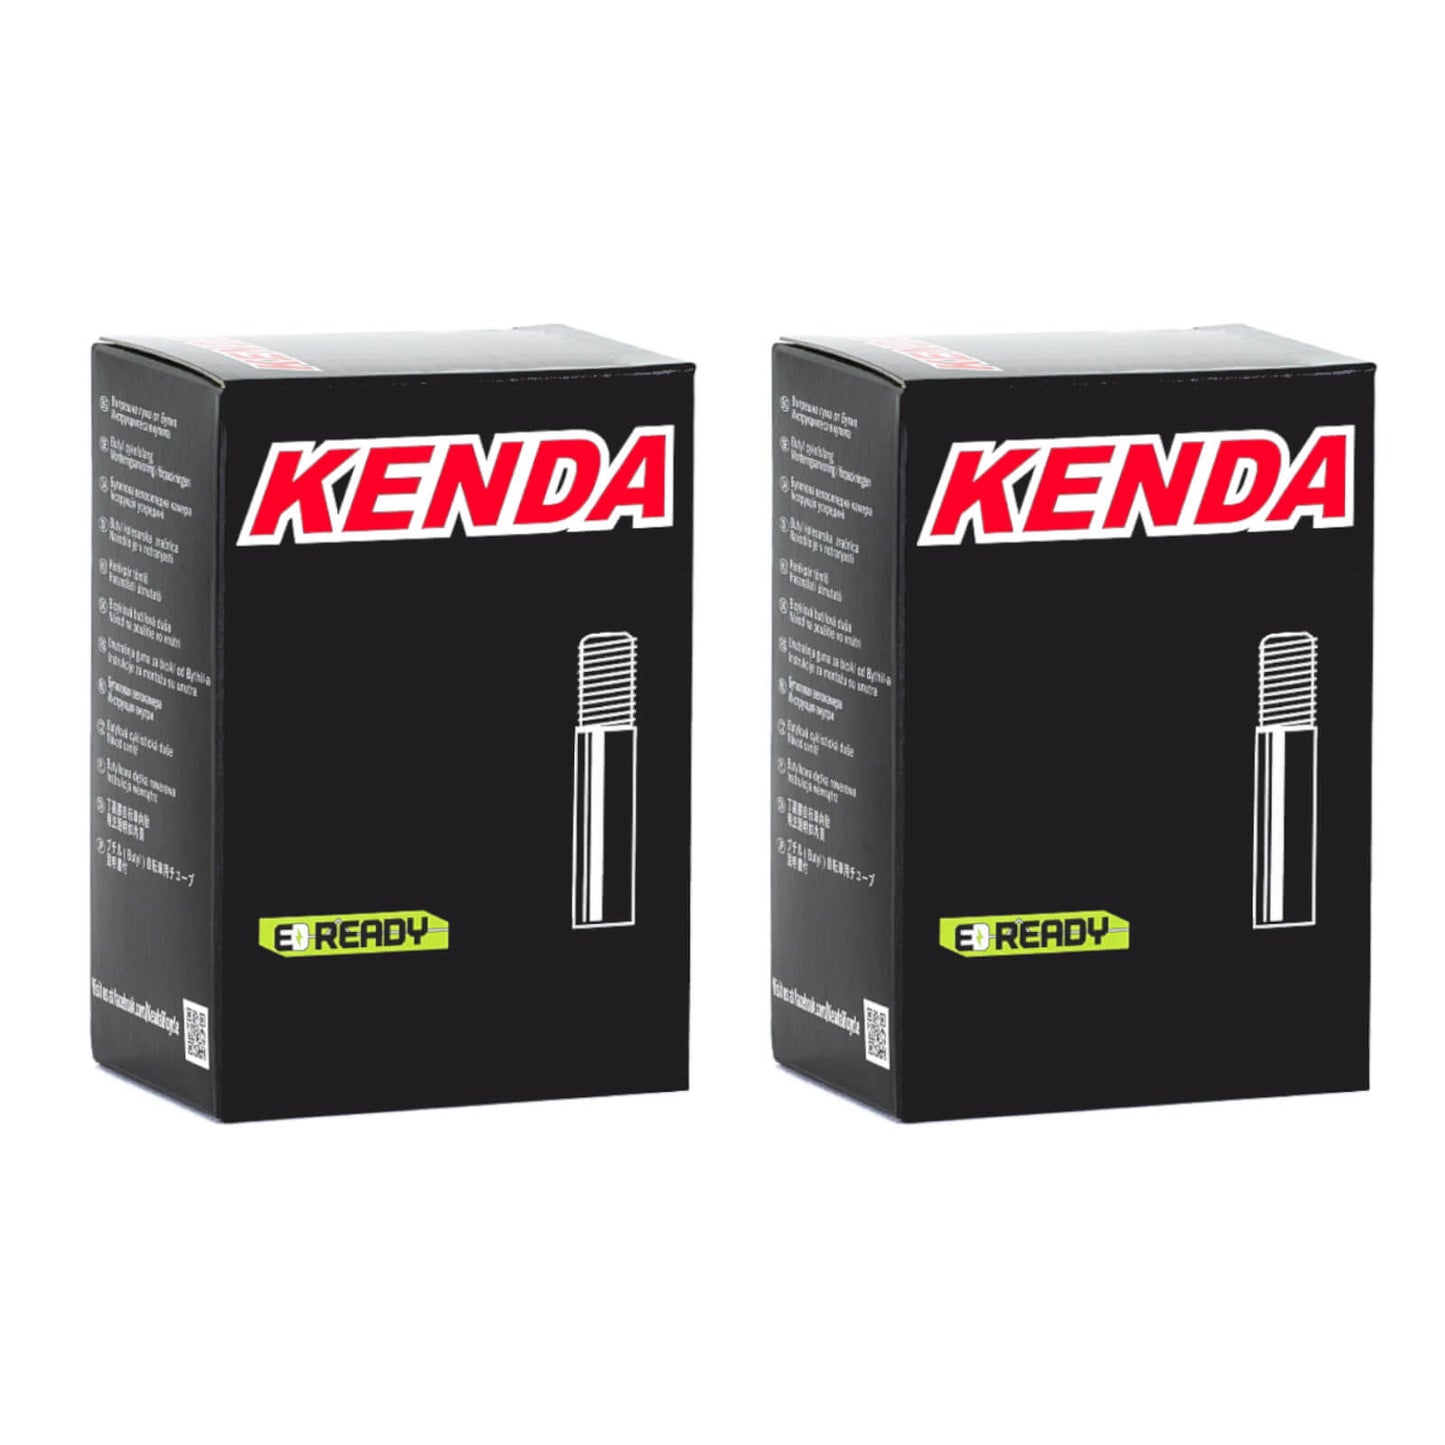 Kenda 26x1.9-2.125" 26 Inch Schrader Valve Bike Inner Tube Pack of 2